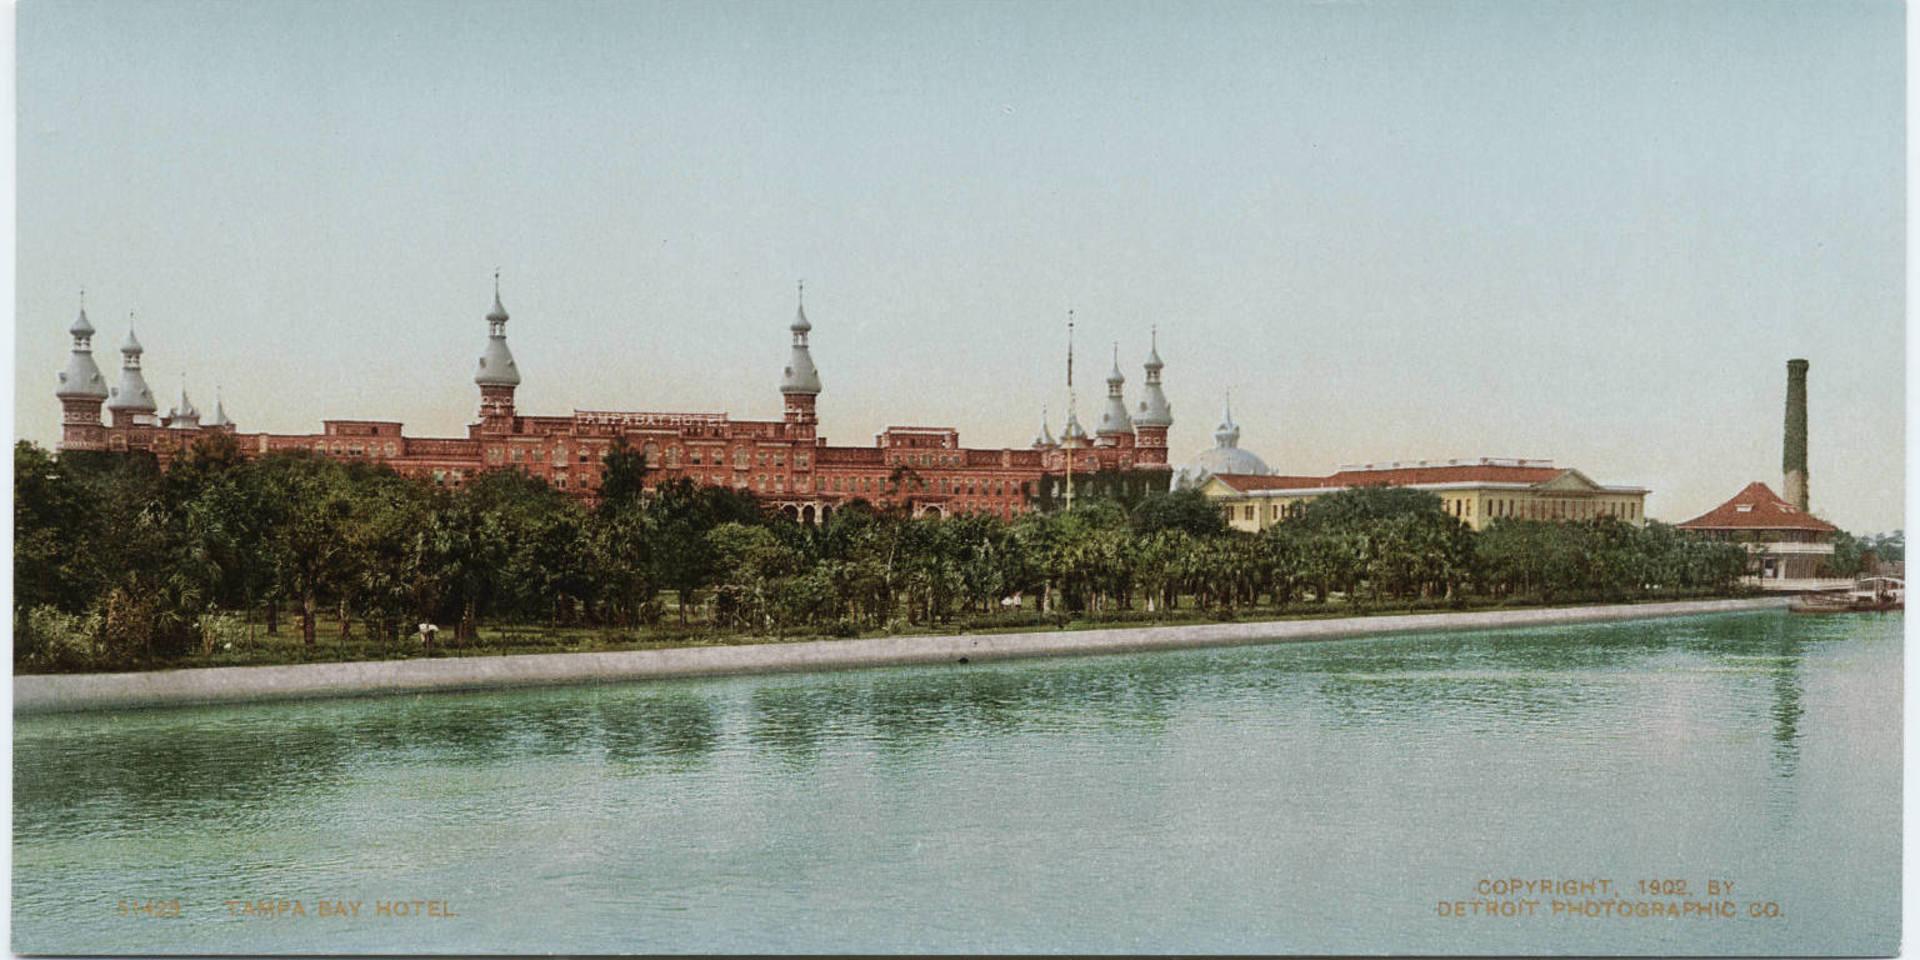 Tampa Bay Hotel cirka 1900, vykort publicerat av Detroit Photographic Company